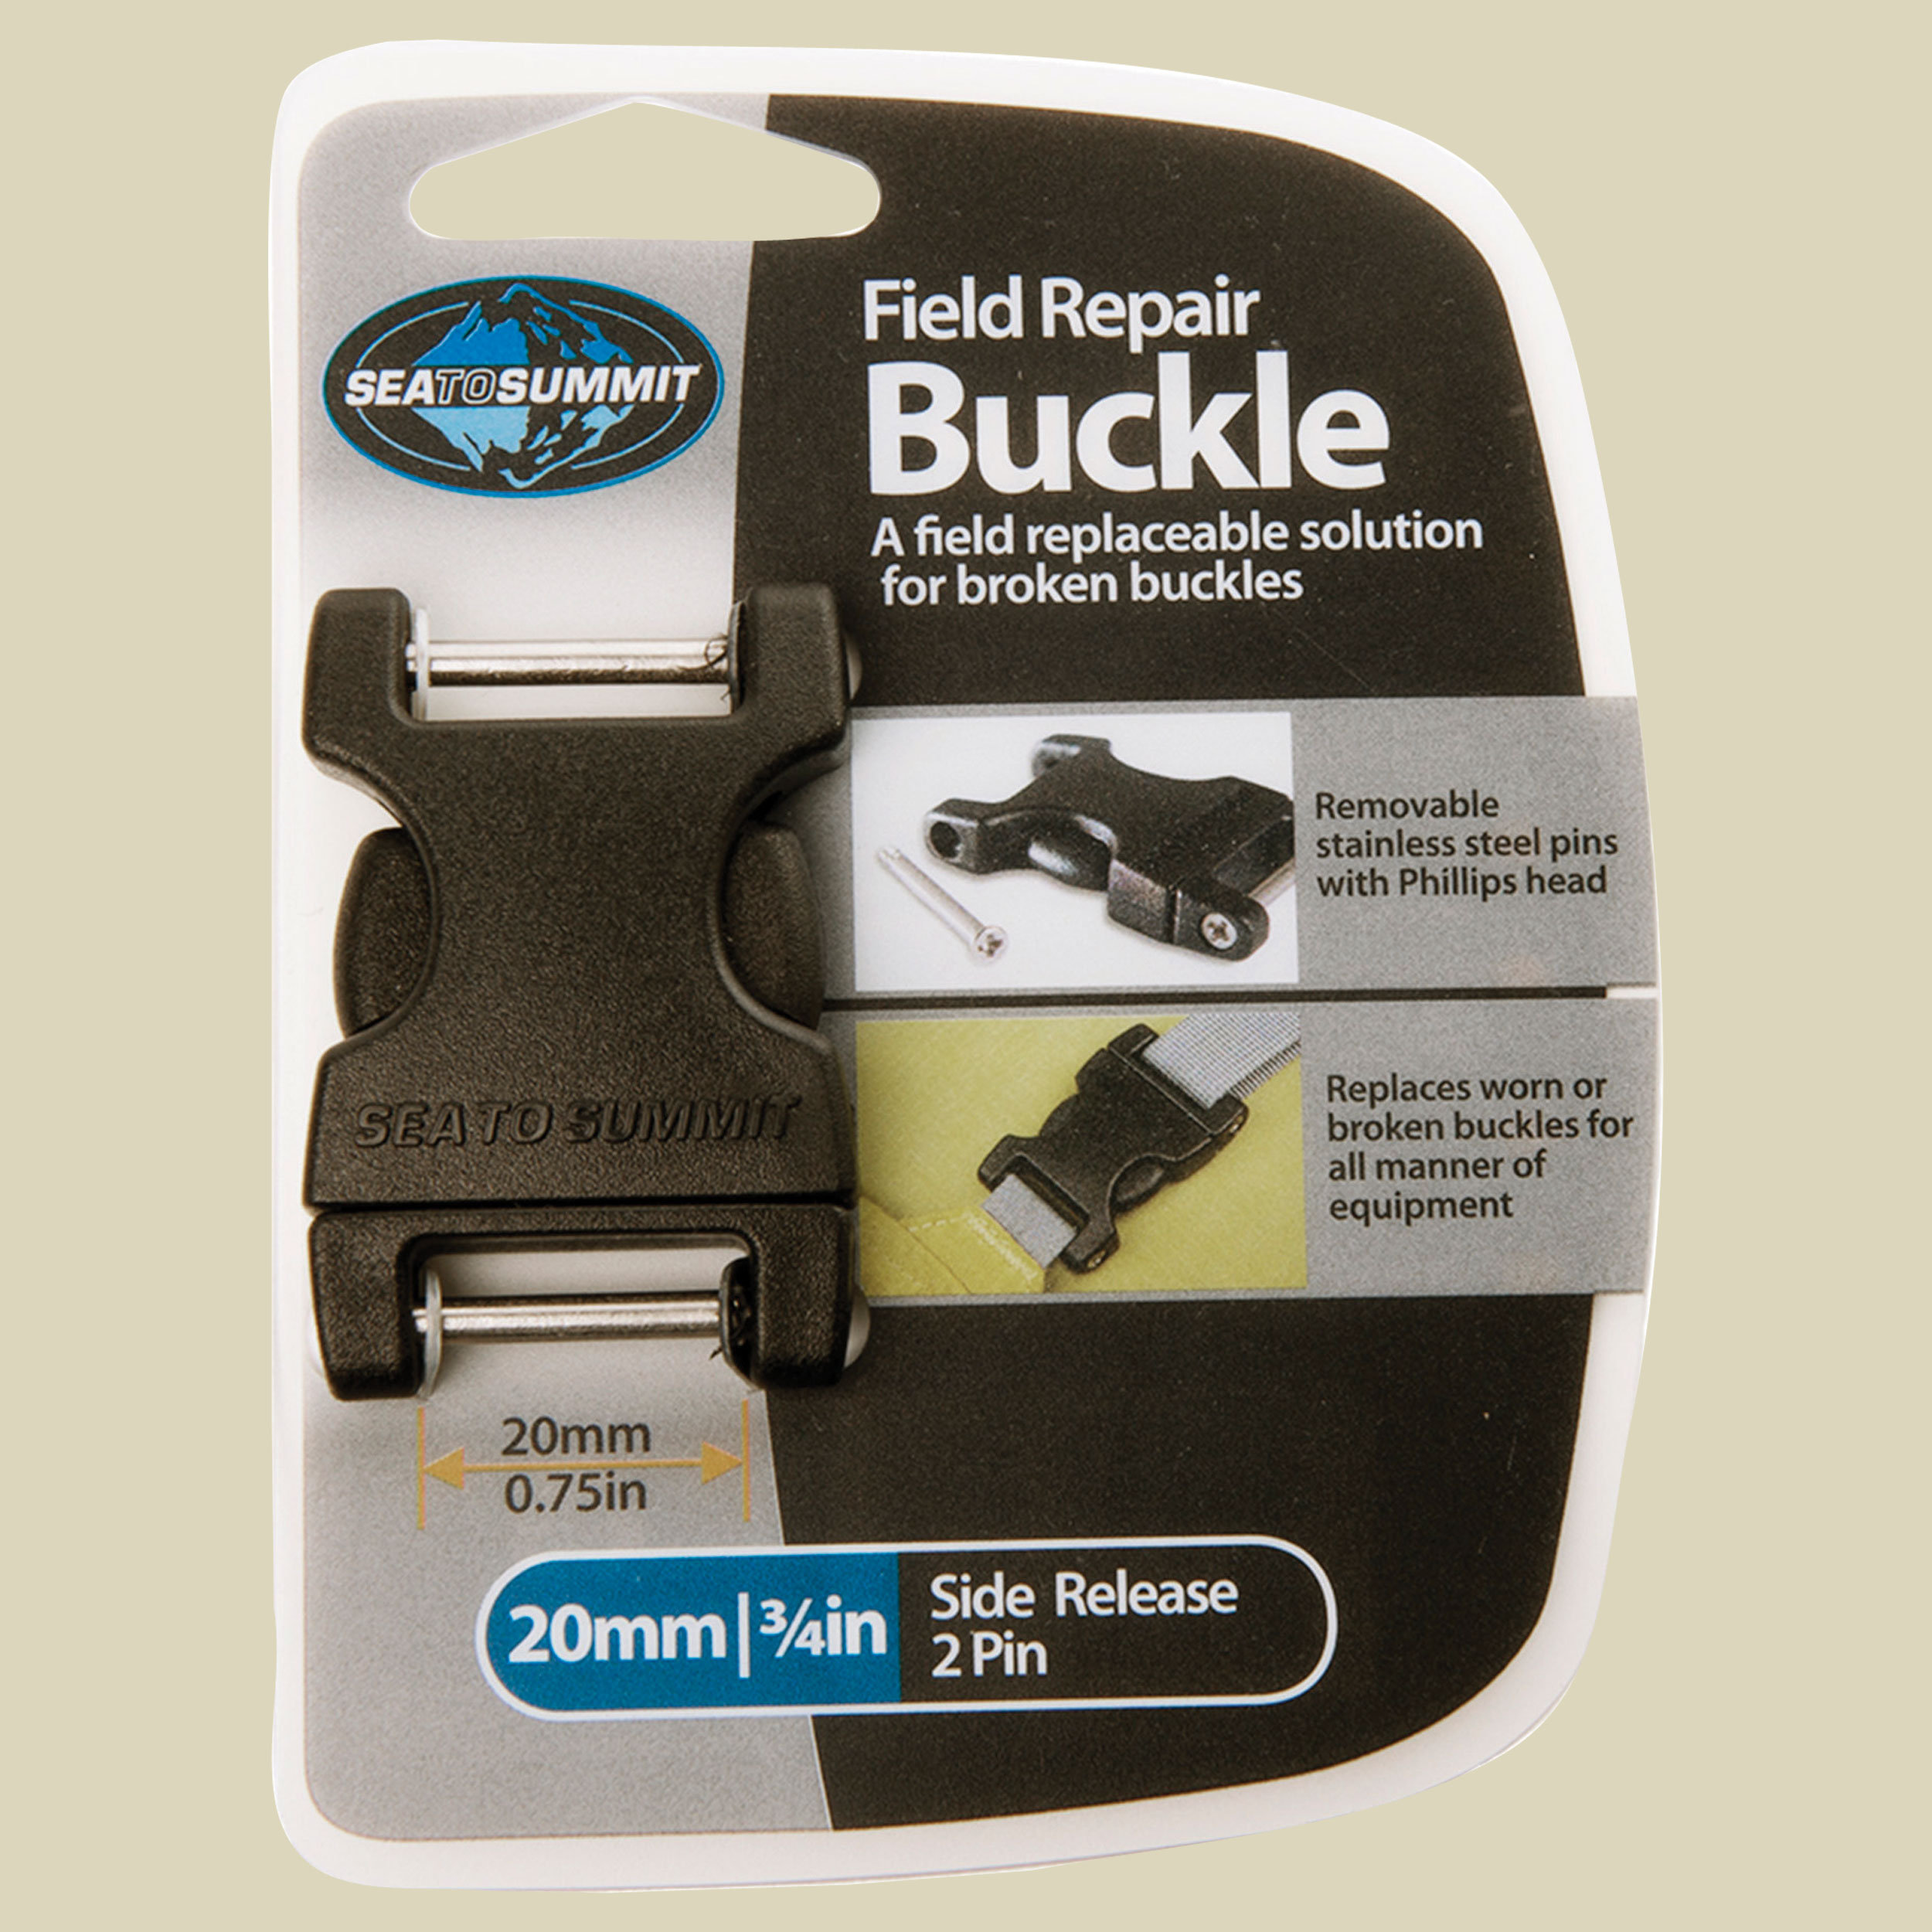 Field Repair Buckle Side Release 20 mm (2Pin) für Gurtbänder bis 20 mm